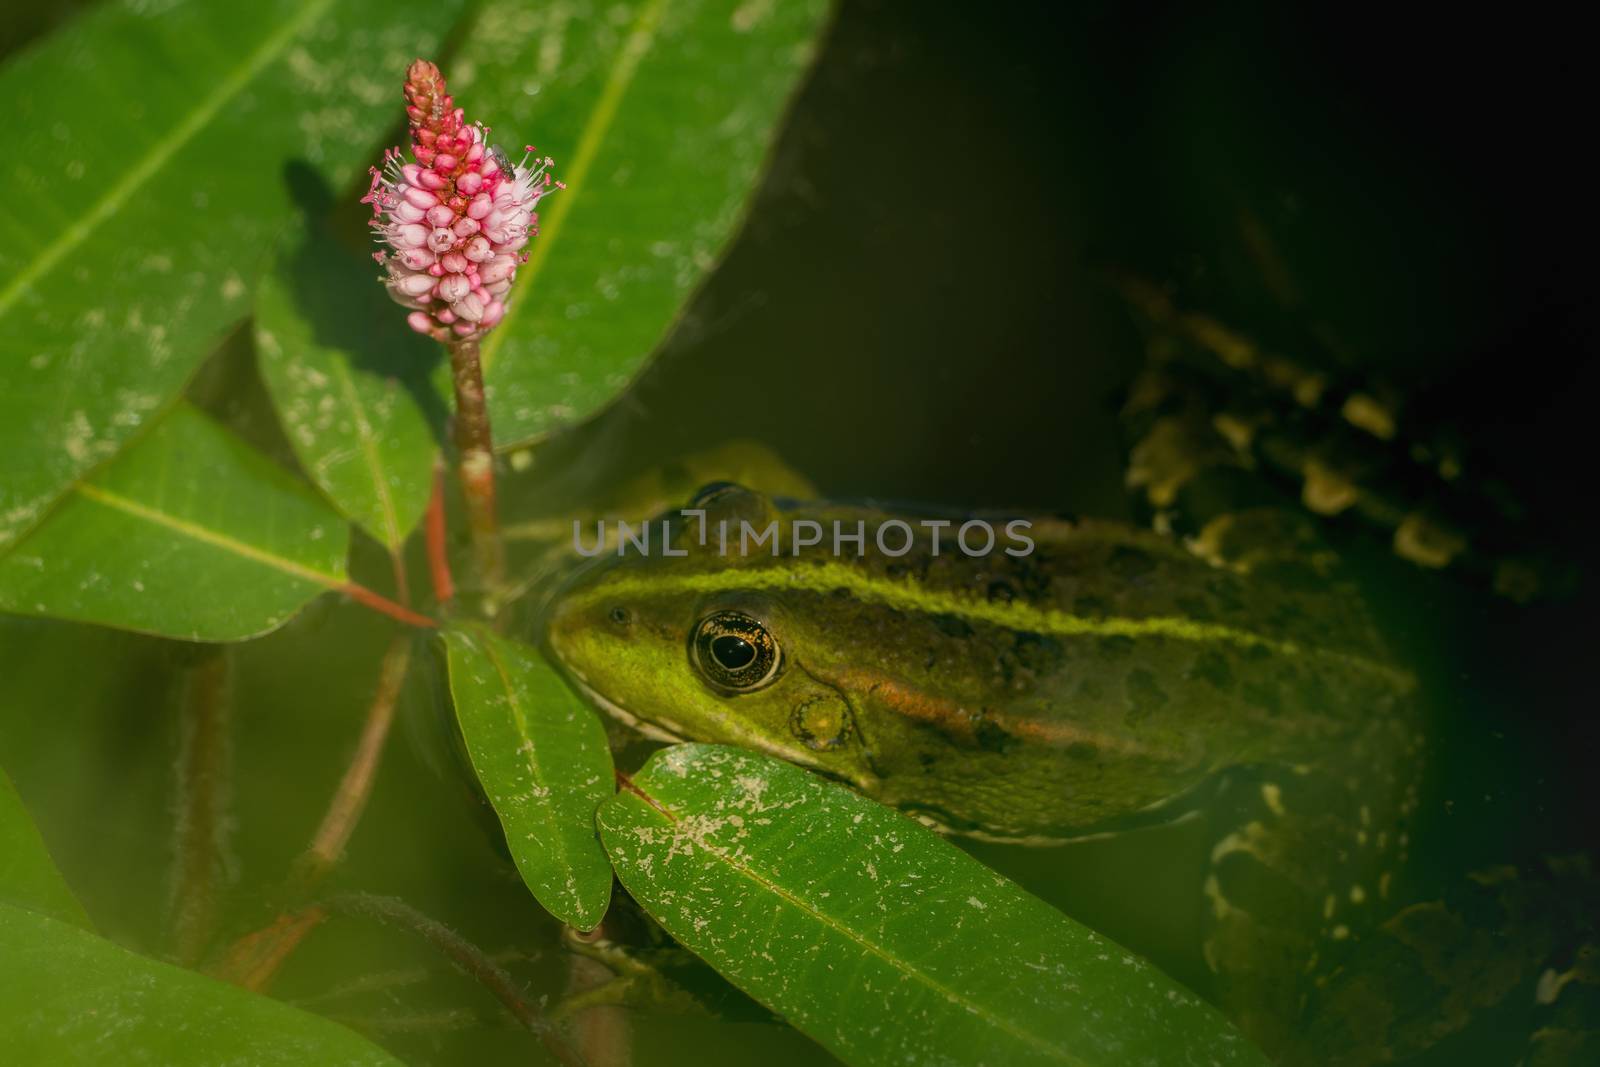 Frog in the water between leaves